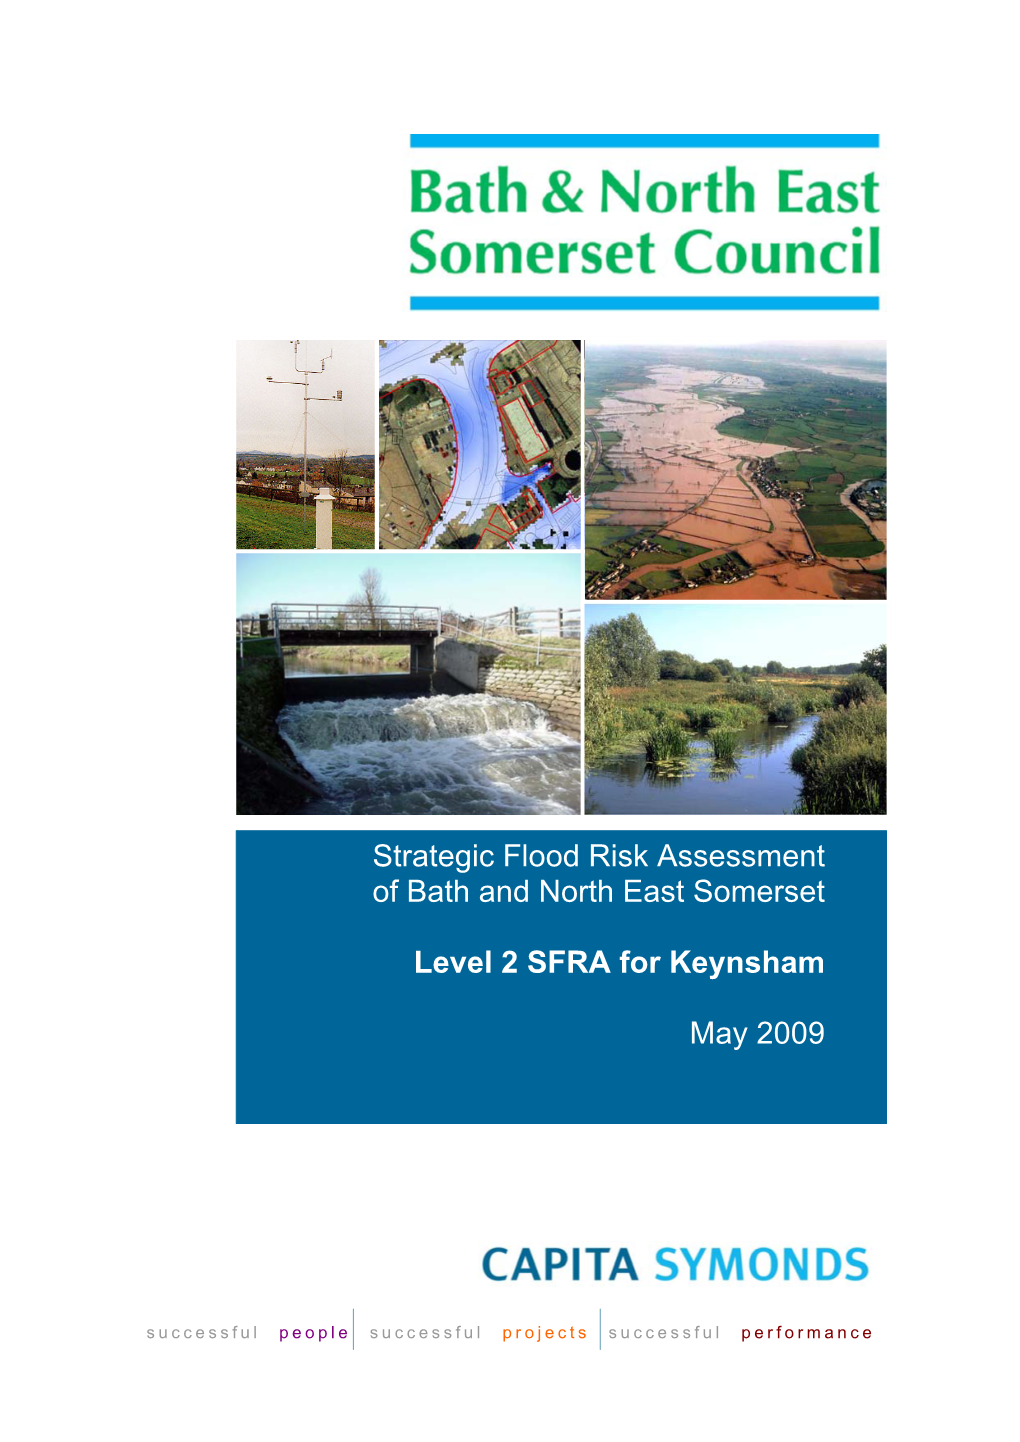 Strategic Flood Risk Assessment- Level 2 SFRA for Keynsham- July 2009